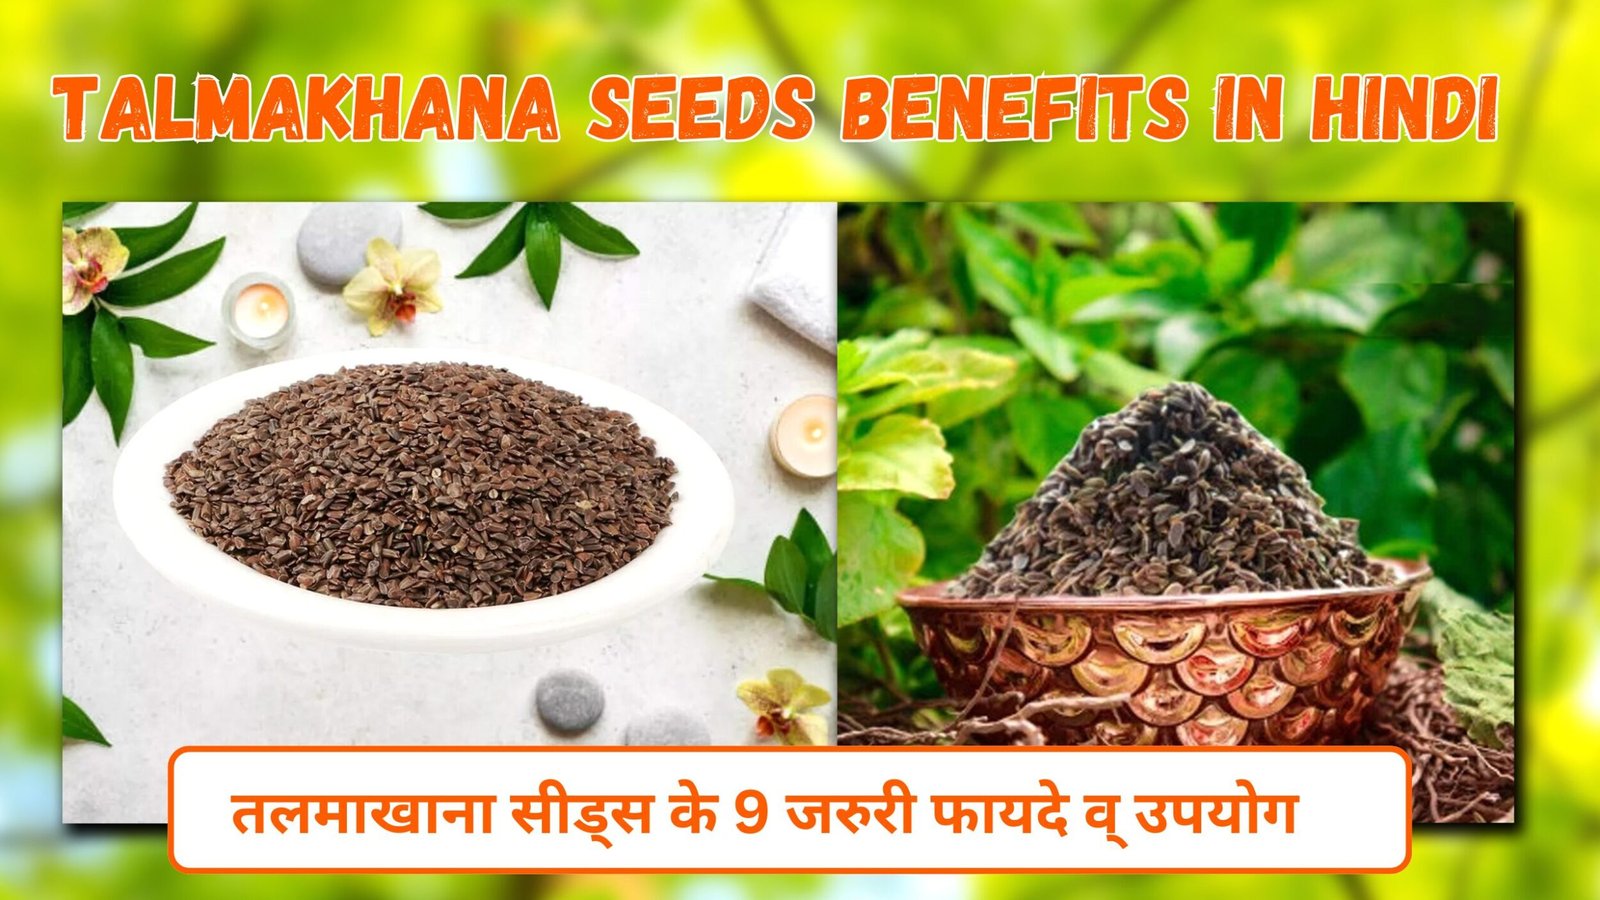 Talmakhana Seeds Benefits in Hindi | तलमाखाना सीड्स के 9 जरुरी फायदे व् उपयोग